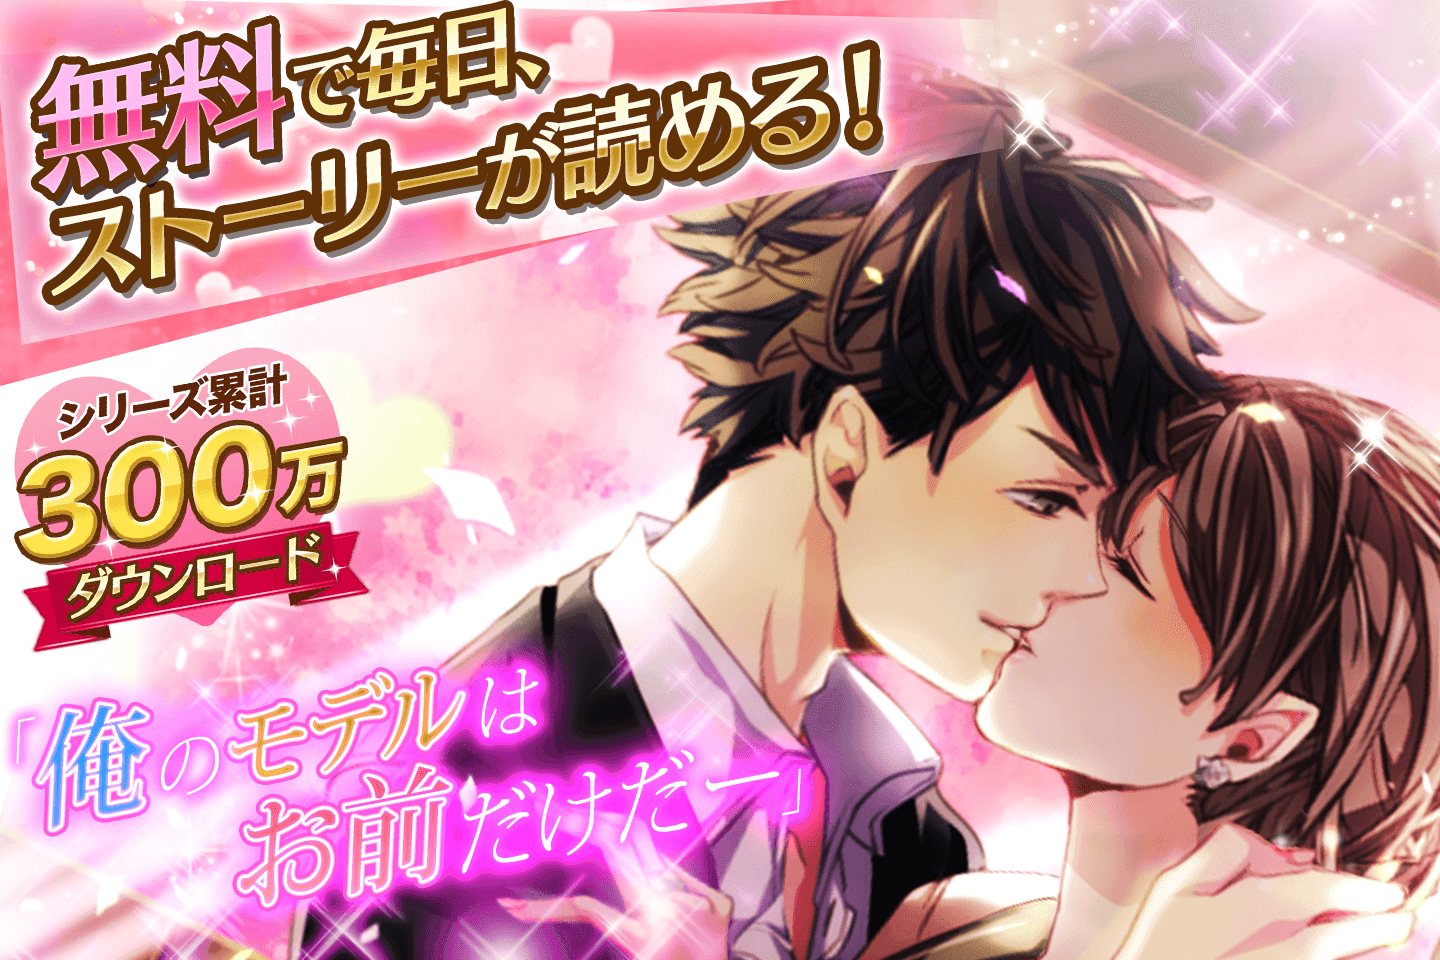 Screenshot 1 of Maji Koi Apparel Boys Gioco romantico gratuito per donne! Gioco da ragazza 1.9.1